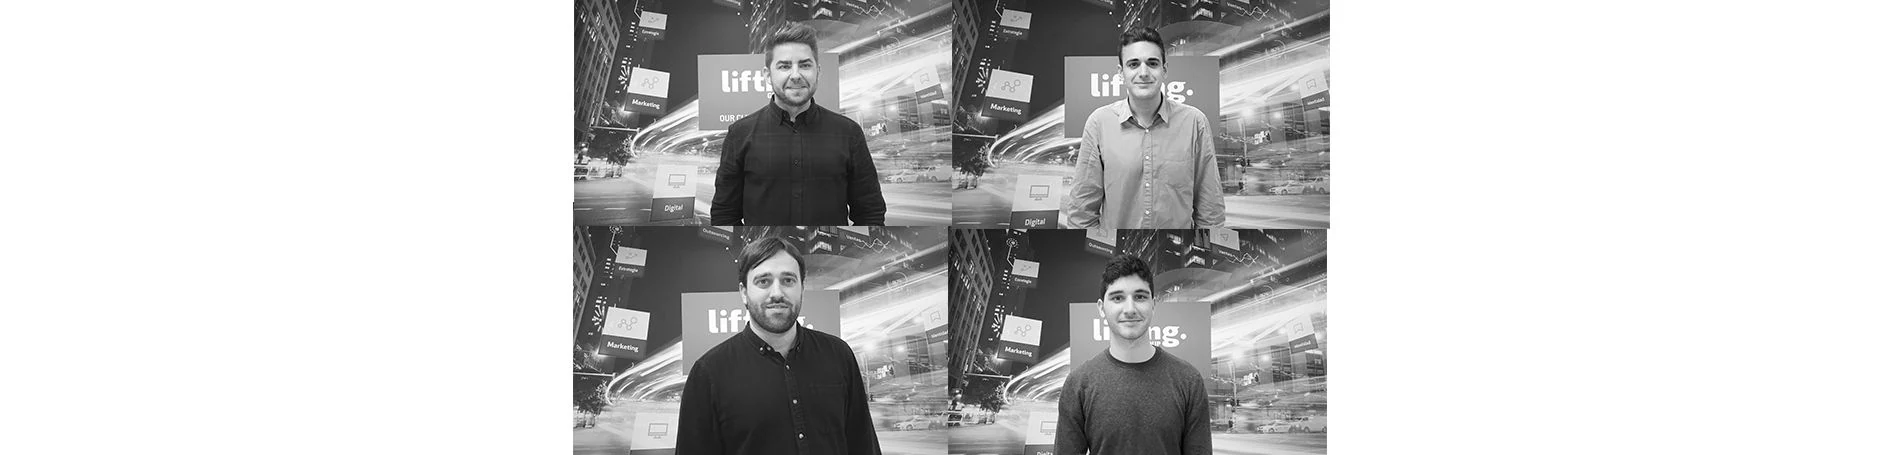 El equipo de Lifting Group Barcelona se refuerza con nuevos fichajes